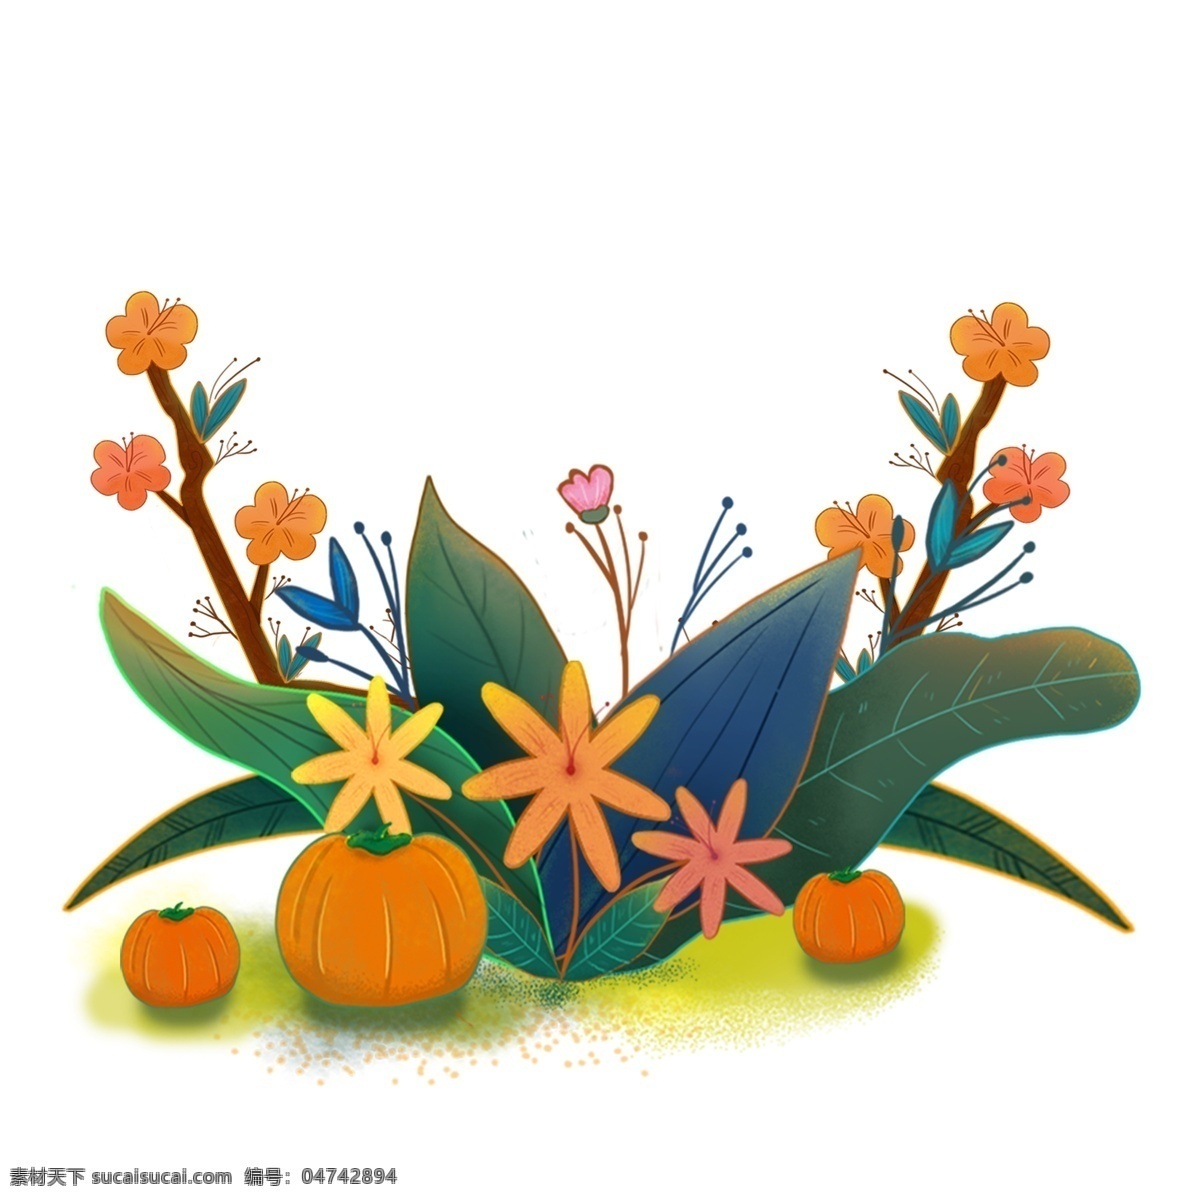 感恩节 南瓜 花朵 原创 手绘 装饰 叶子 绿叶 植物 橙色 绿色 原创手绘插画 插画